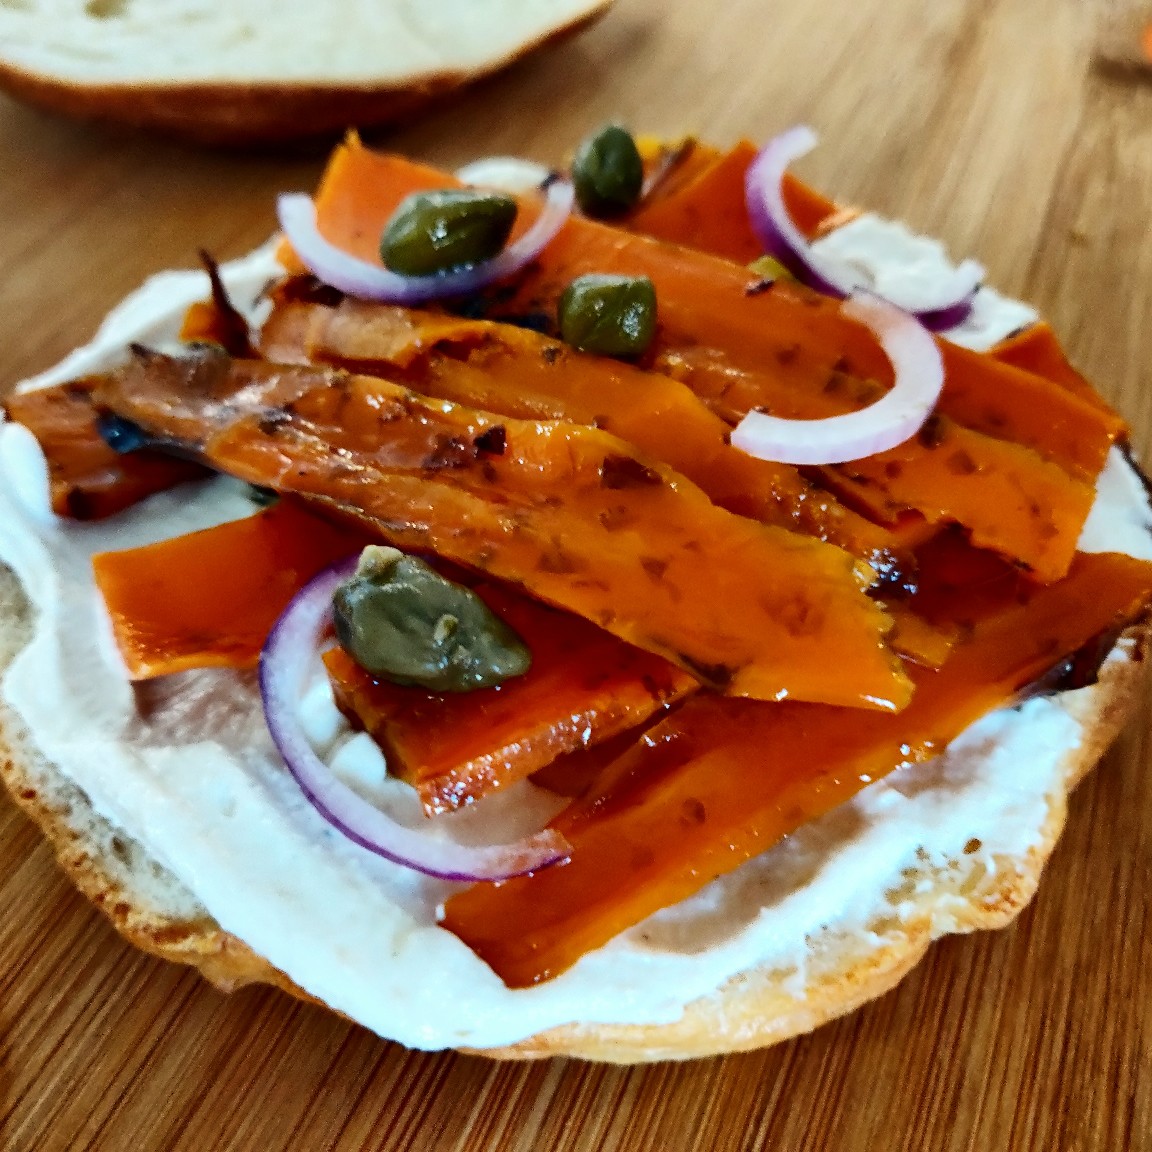 Vegant - Vegan lox (smoked salmon)